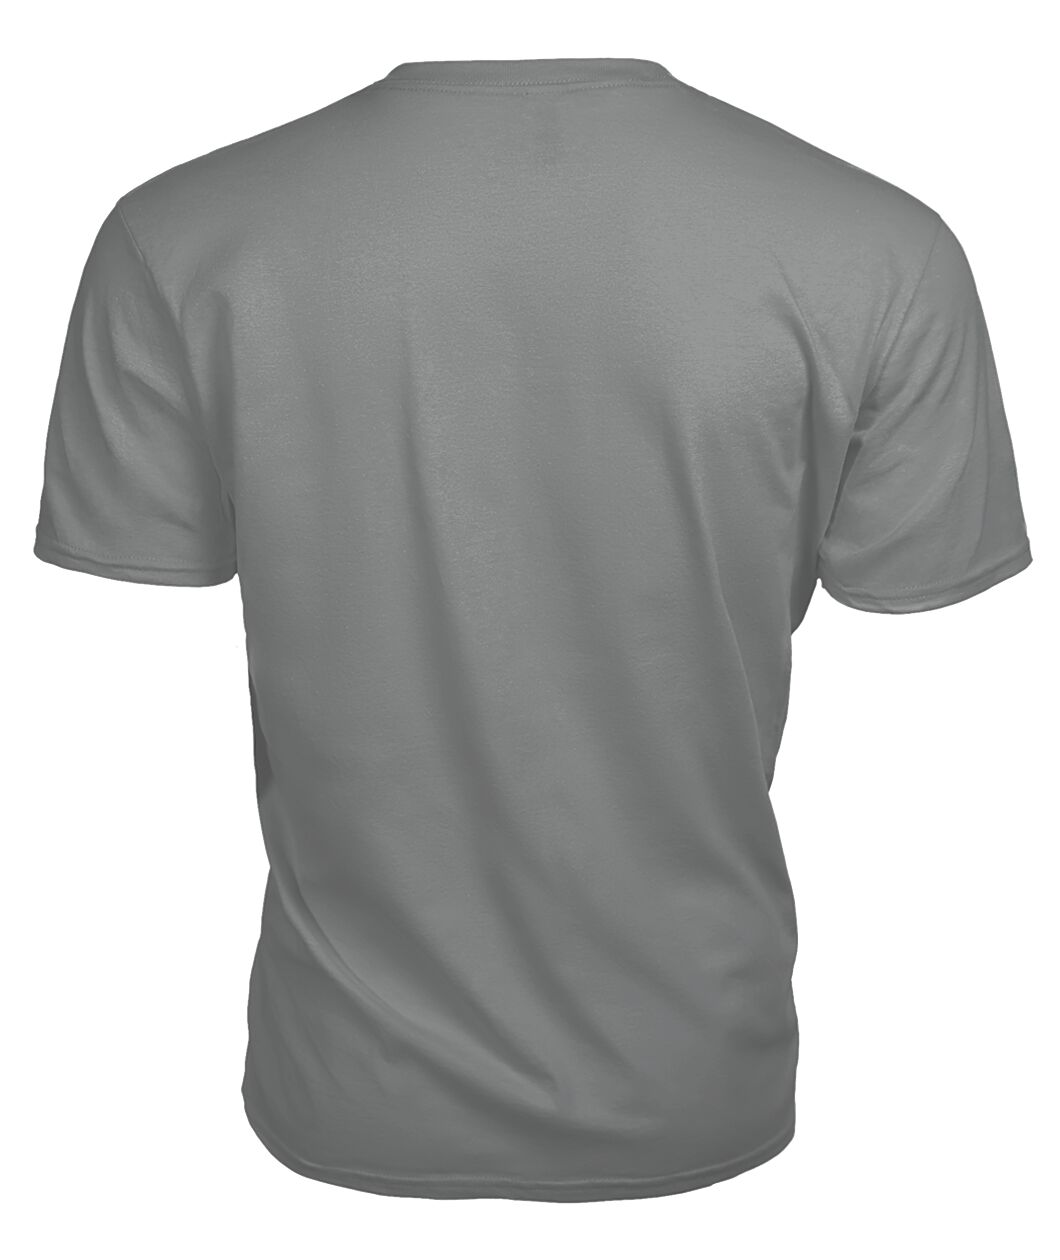 Broun Family Tartan - 2D T-shirt